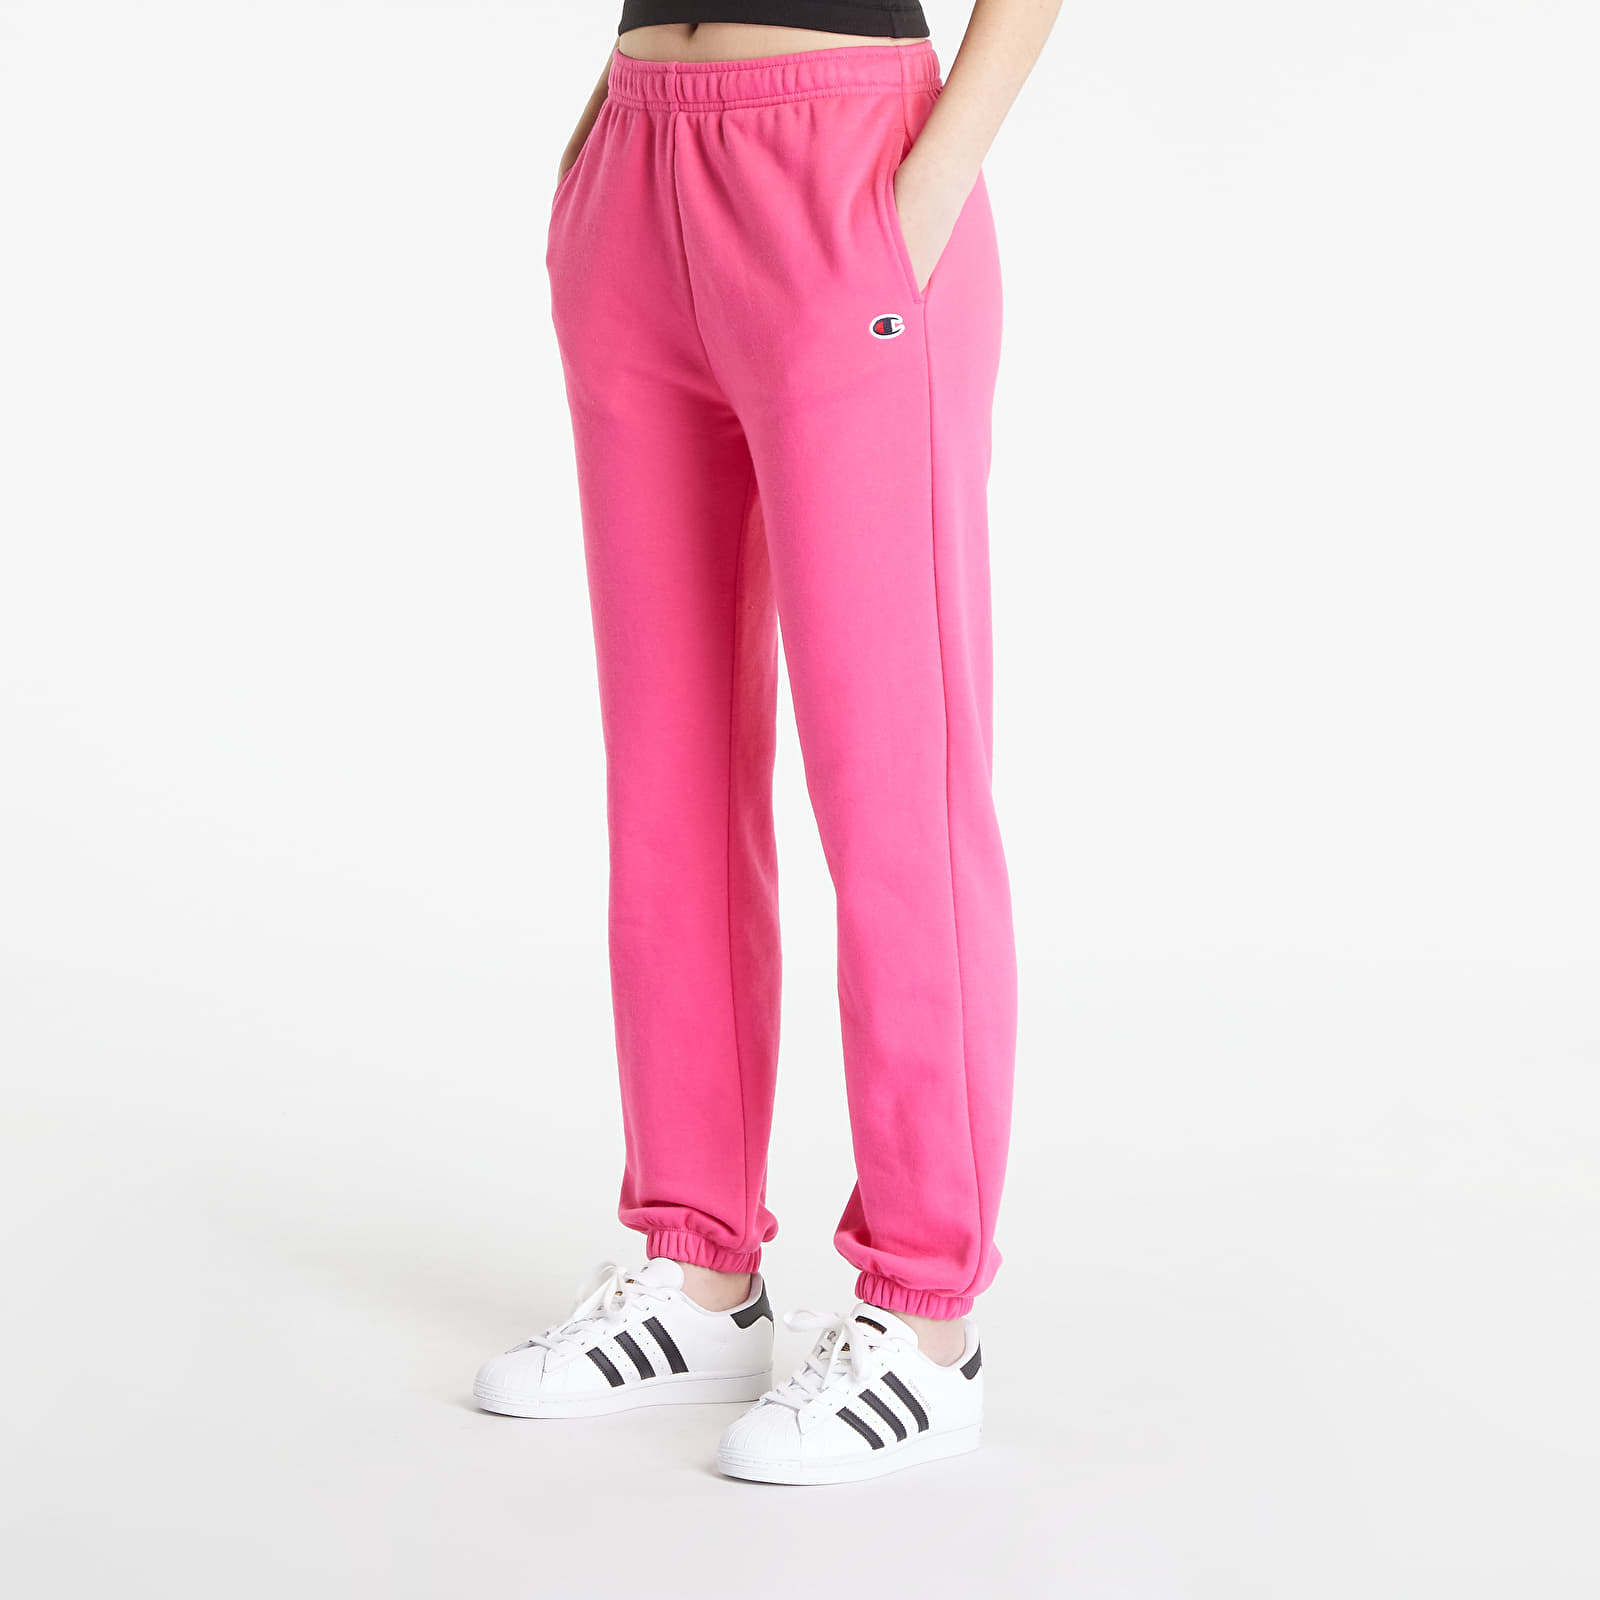 Pants | Pink Cuff Pants Jogger Elastic Champion Queens